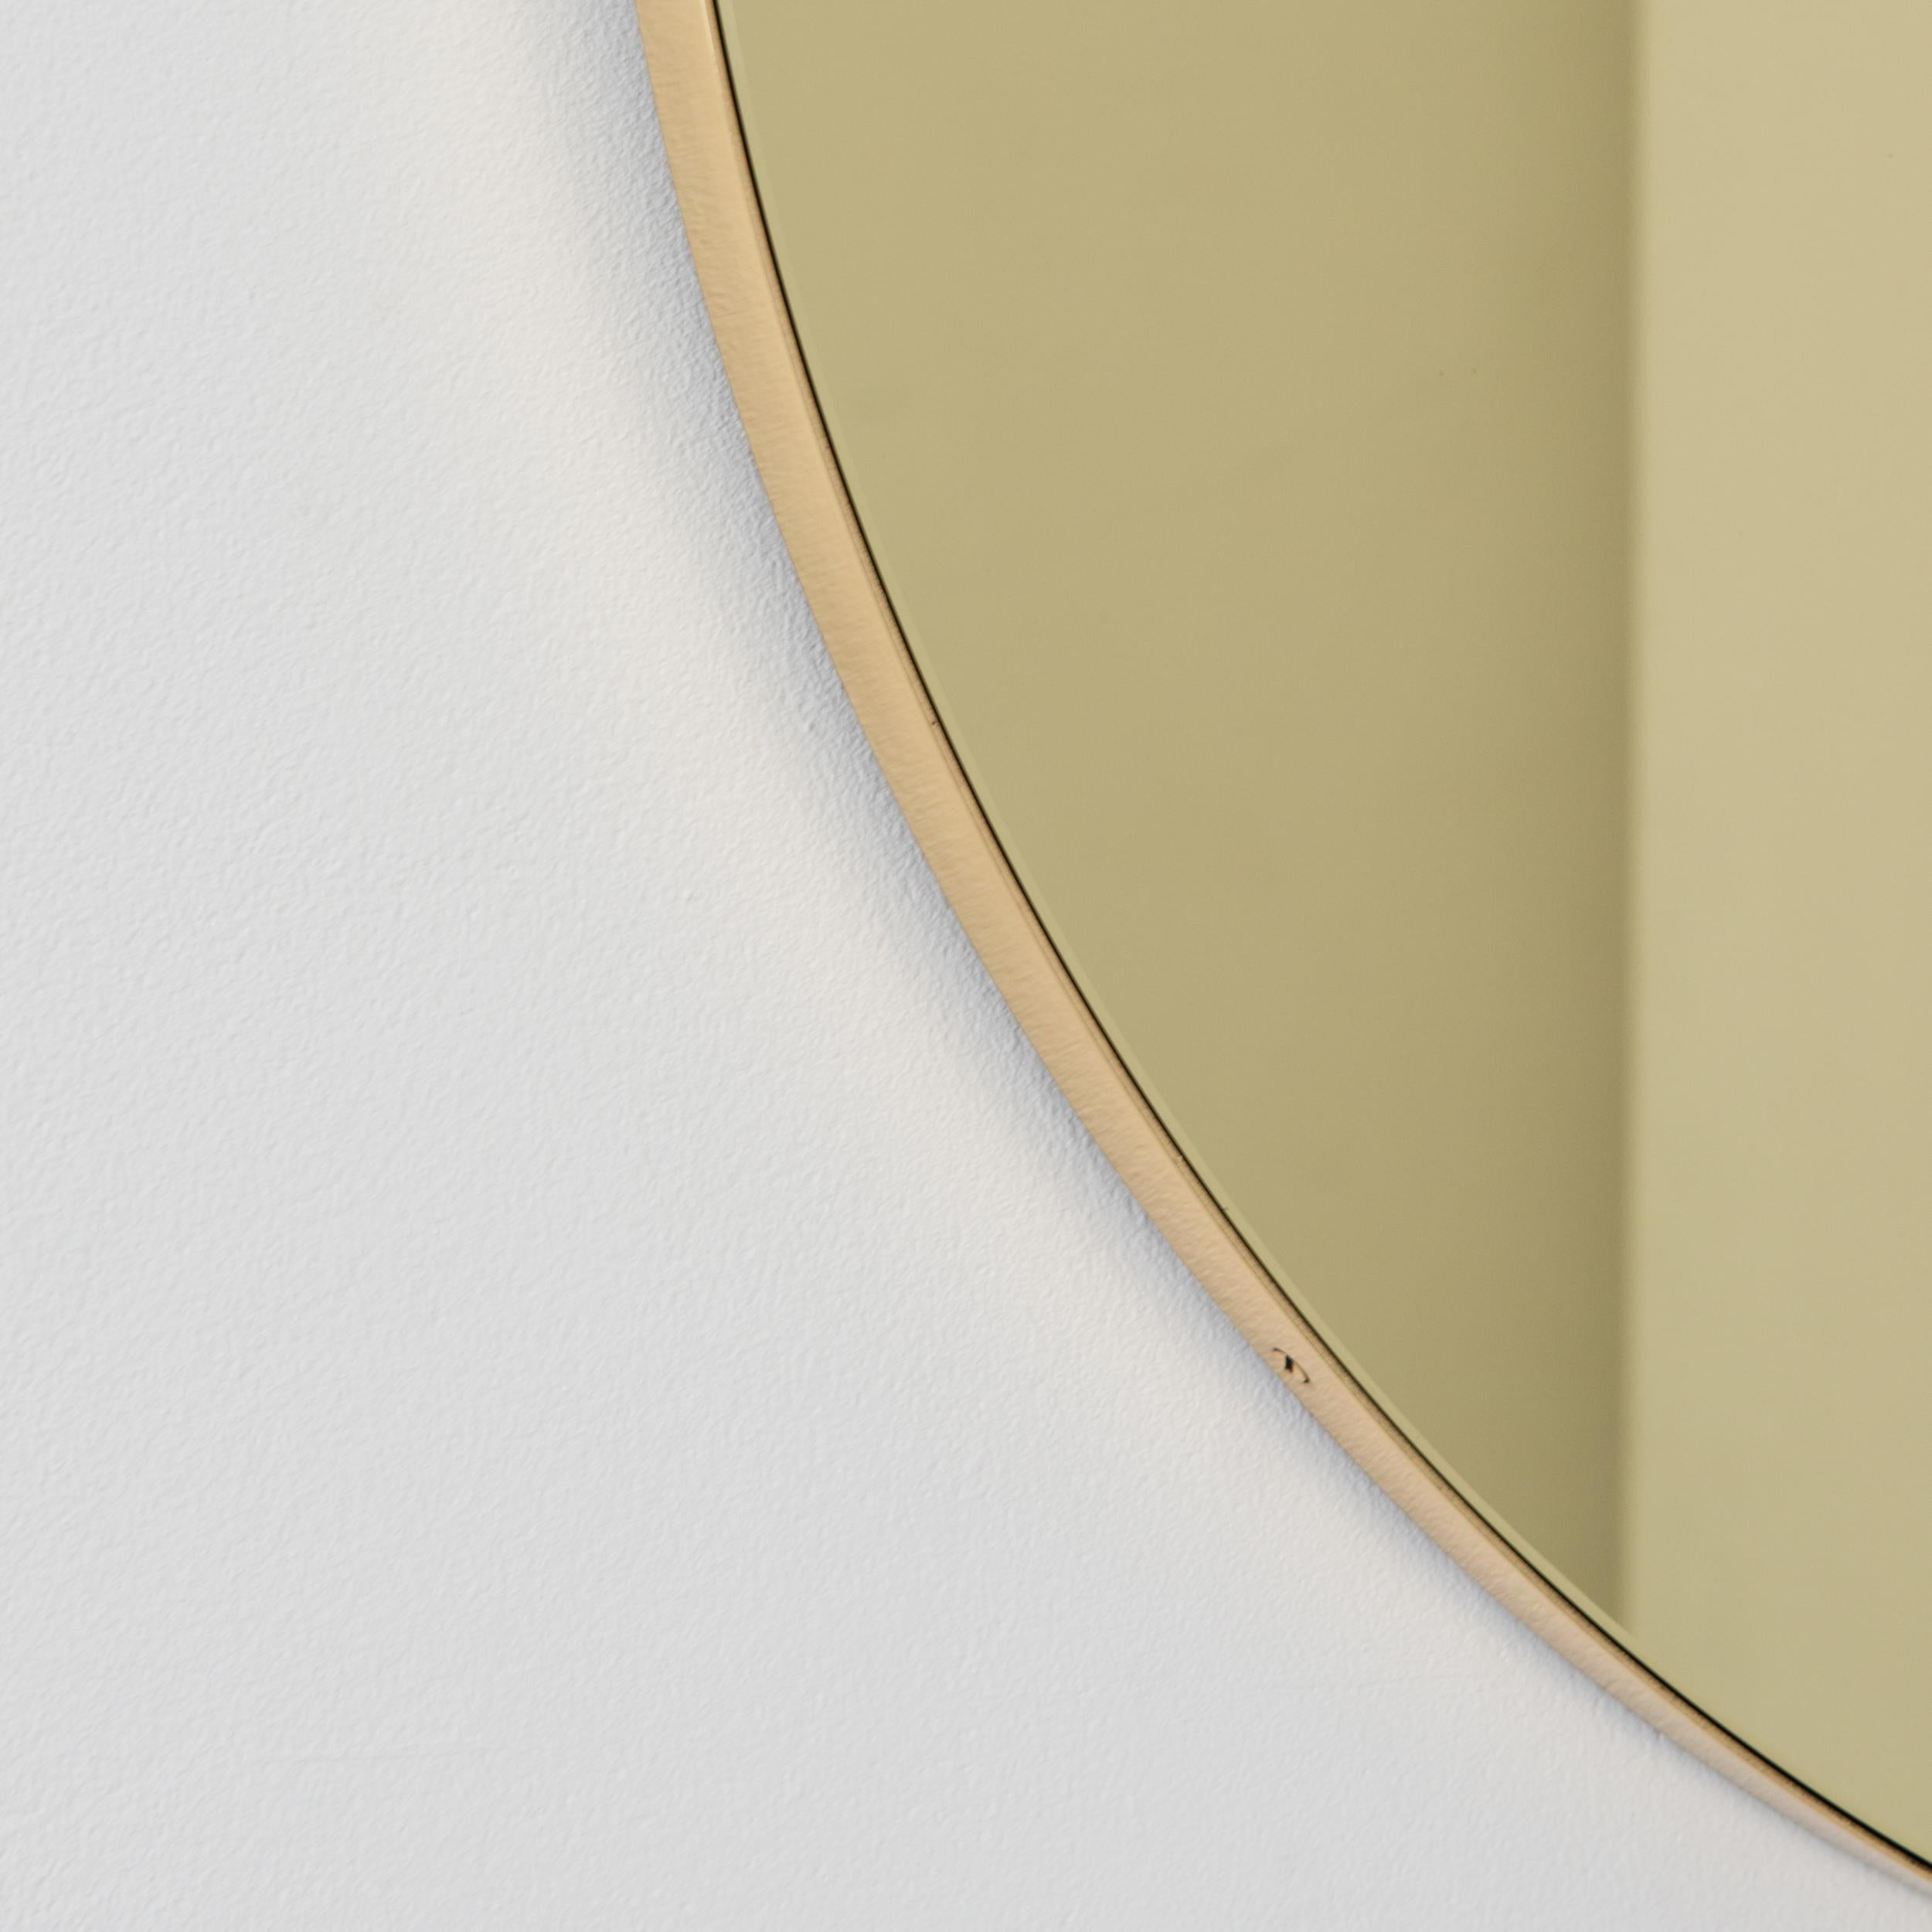 British Orbis Gold Tinted Round Minimalist Mirror with Brass Frame, Regular For Sale